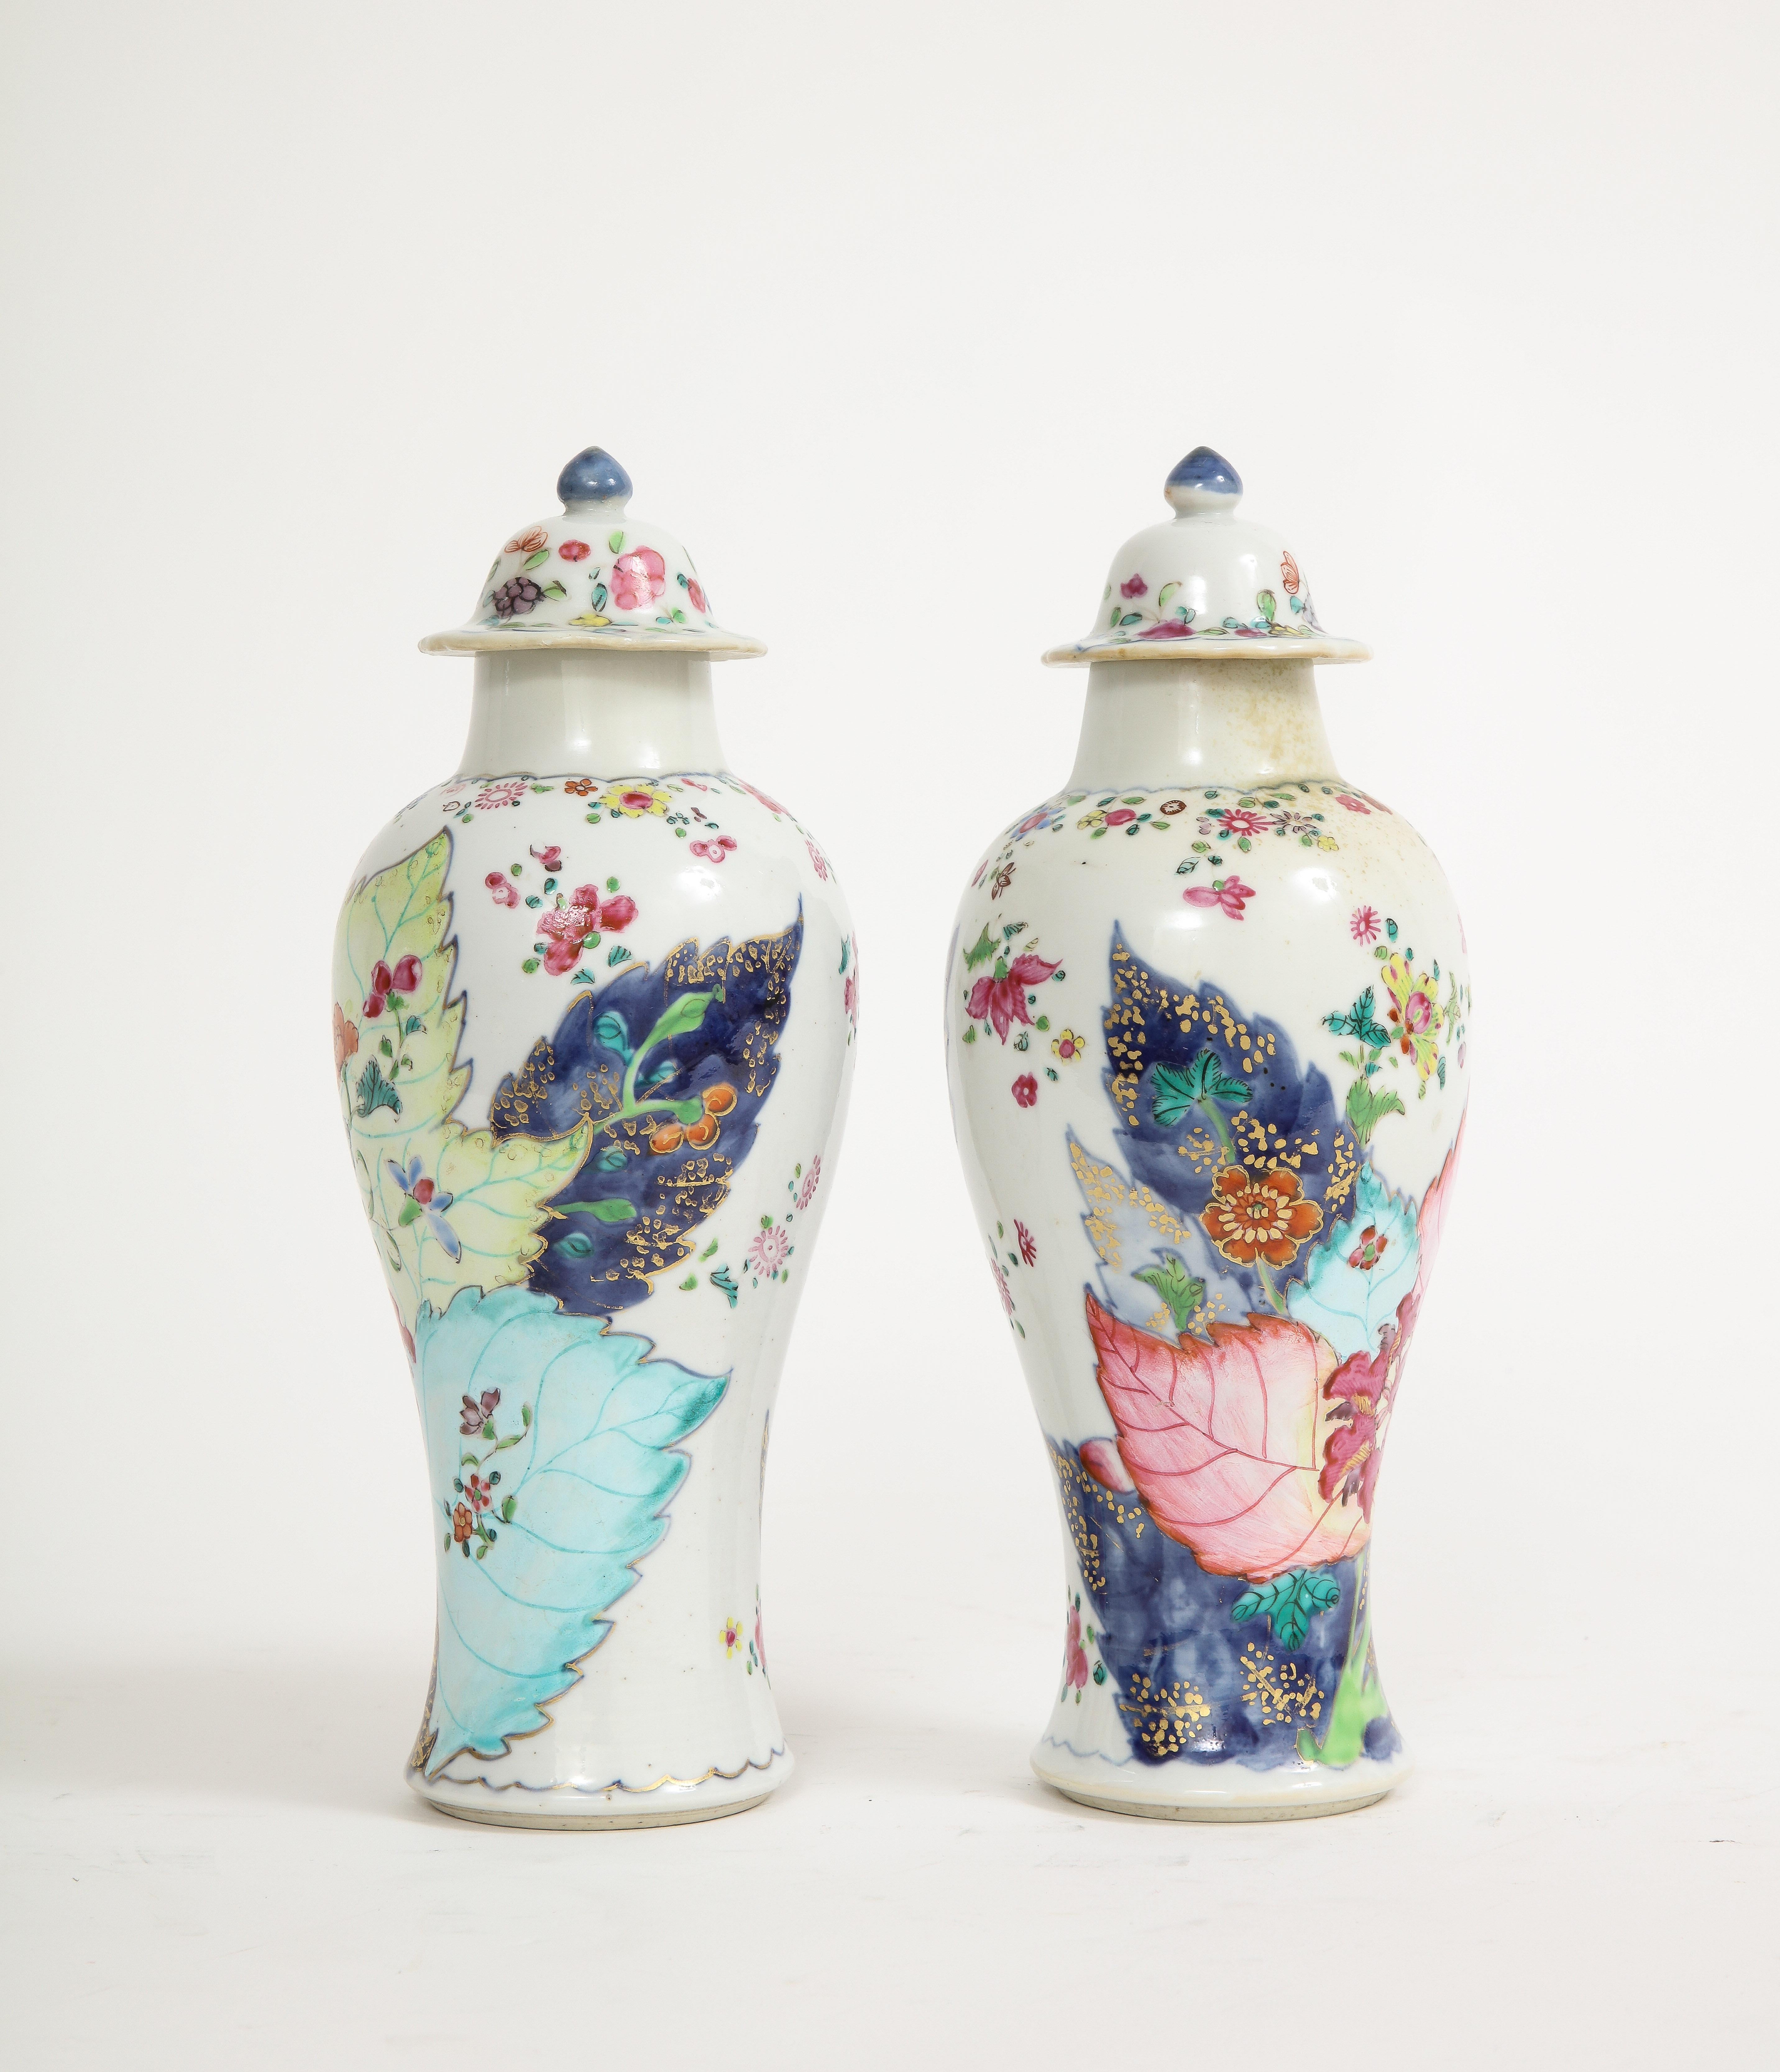 Jede kleine Vase ist reich emailliert mit dem klassischen Muster in lebhaften, vergoldeten Famille-Rose-Farben.  Ein Paar Vasen mit Tabakblattmuster in dieser Qualität und in diesem Zustand sind sehr selten zu finden und sehr begehrt.  Das